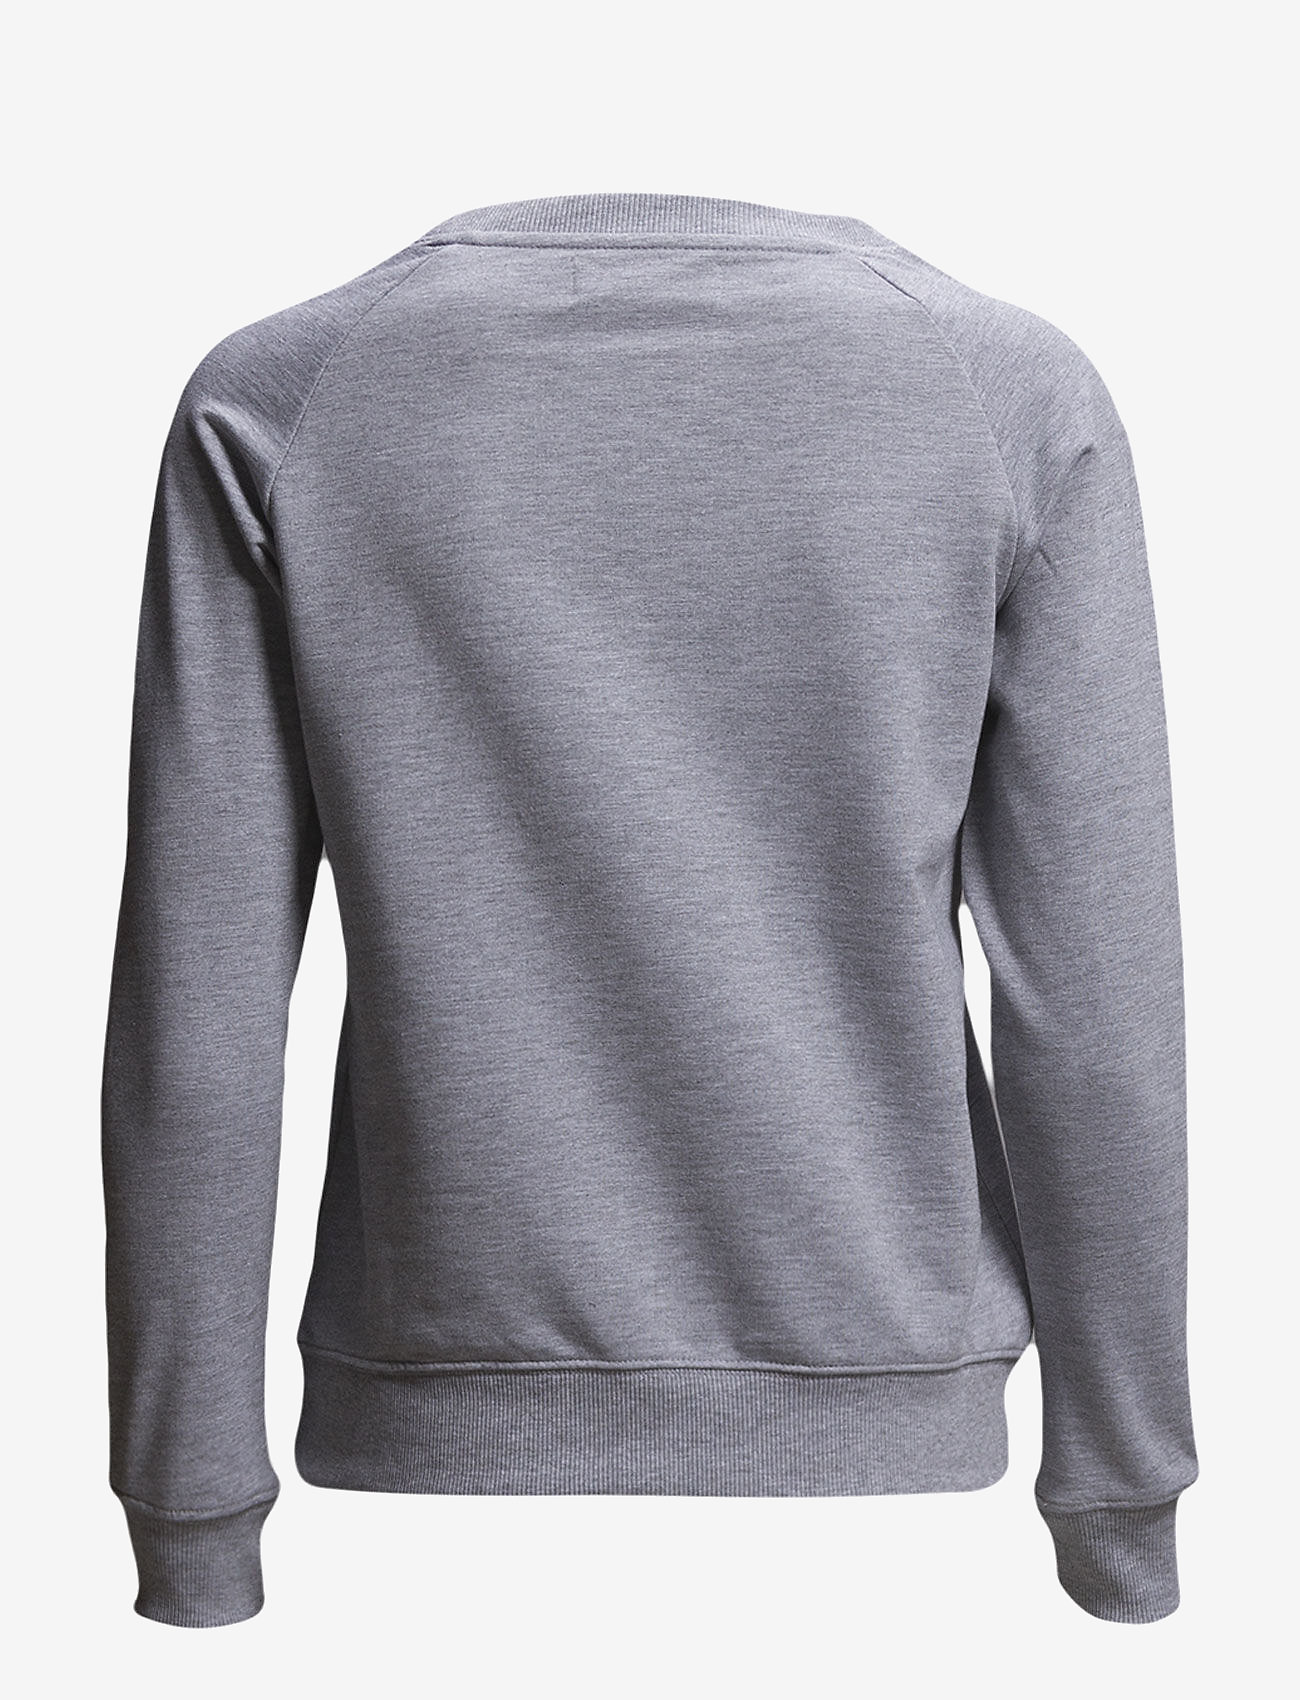 Les Deux - Nørregaard T-Shirt - Seasonal - lowest prices - grey - 1